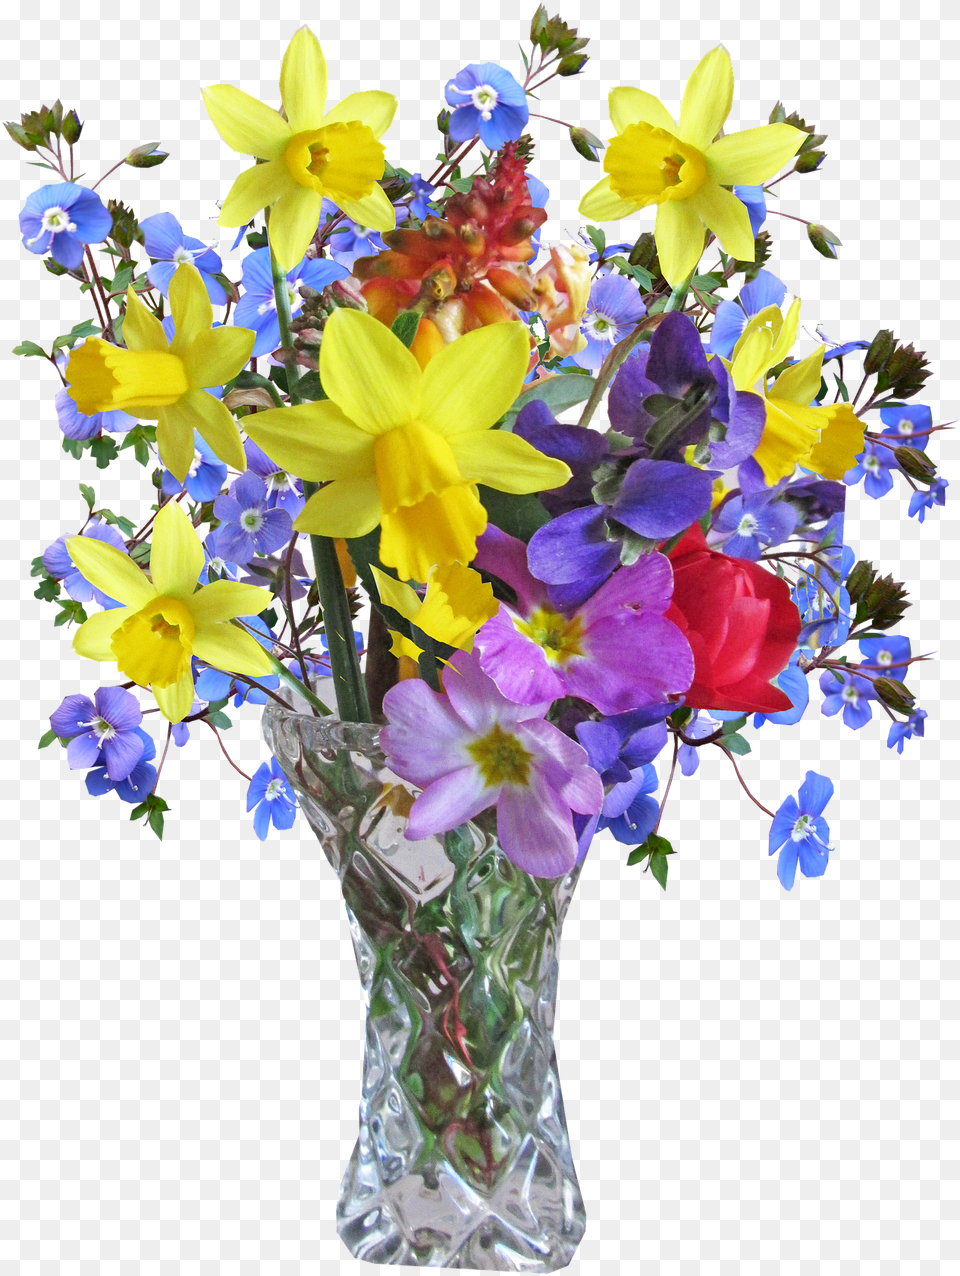 Bonecos De Jardim De Metal, Flower, Flower Arrangement, Flower Bouquet, Plant Free Transparent Png